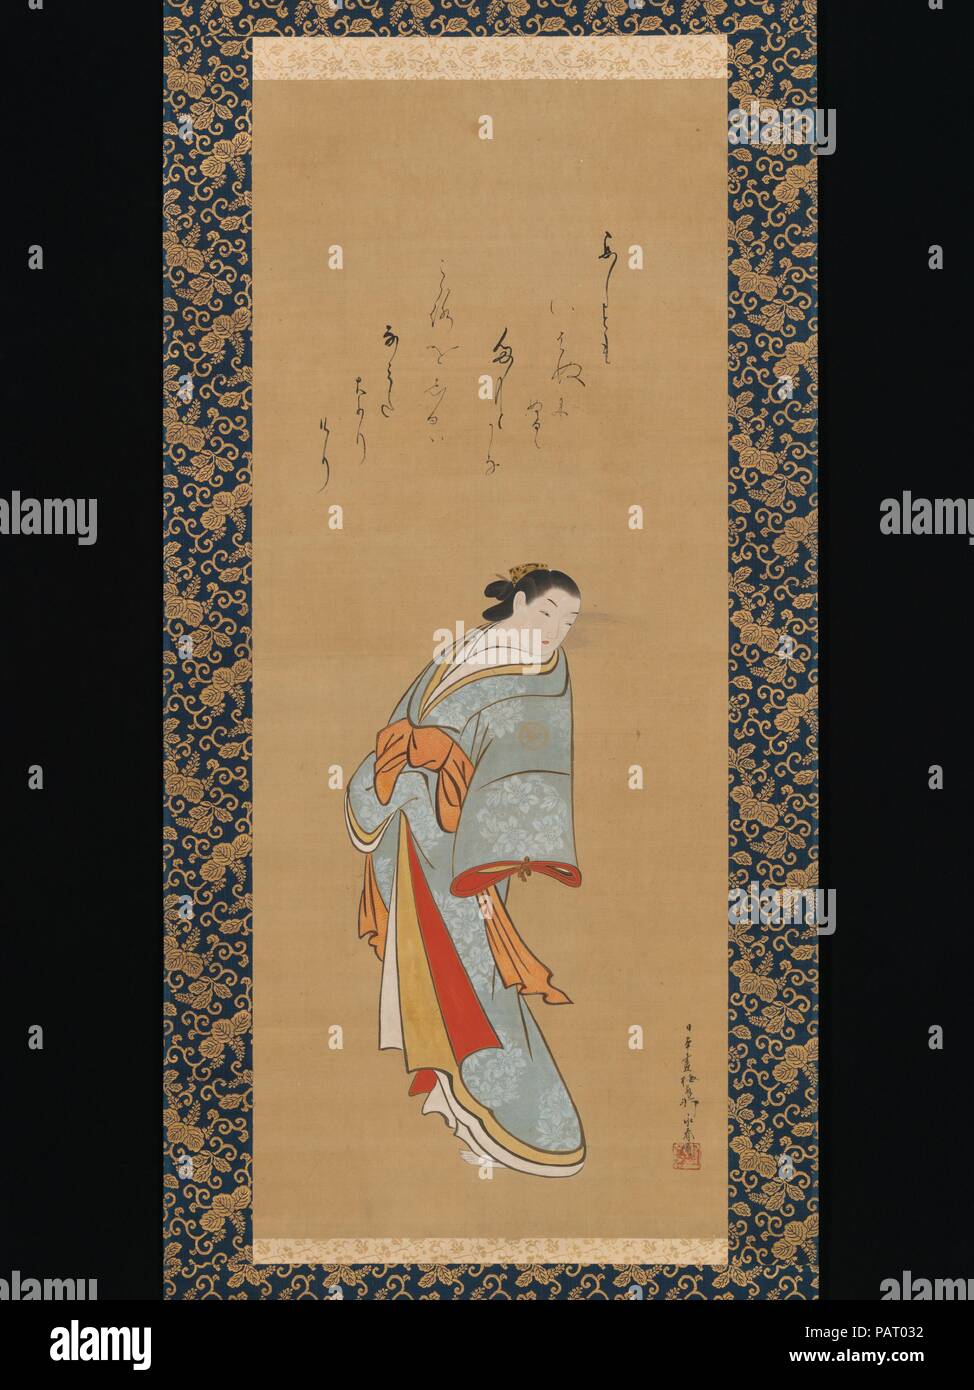 Yamato e fotografías e imágenes de alta resolución - Alamy